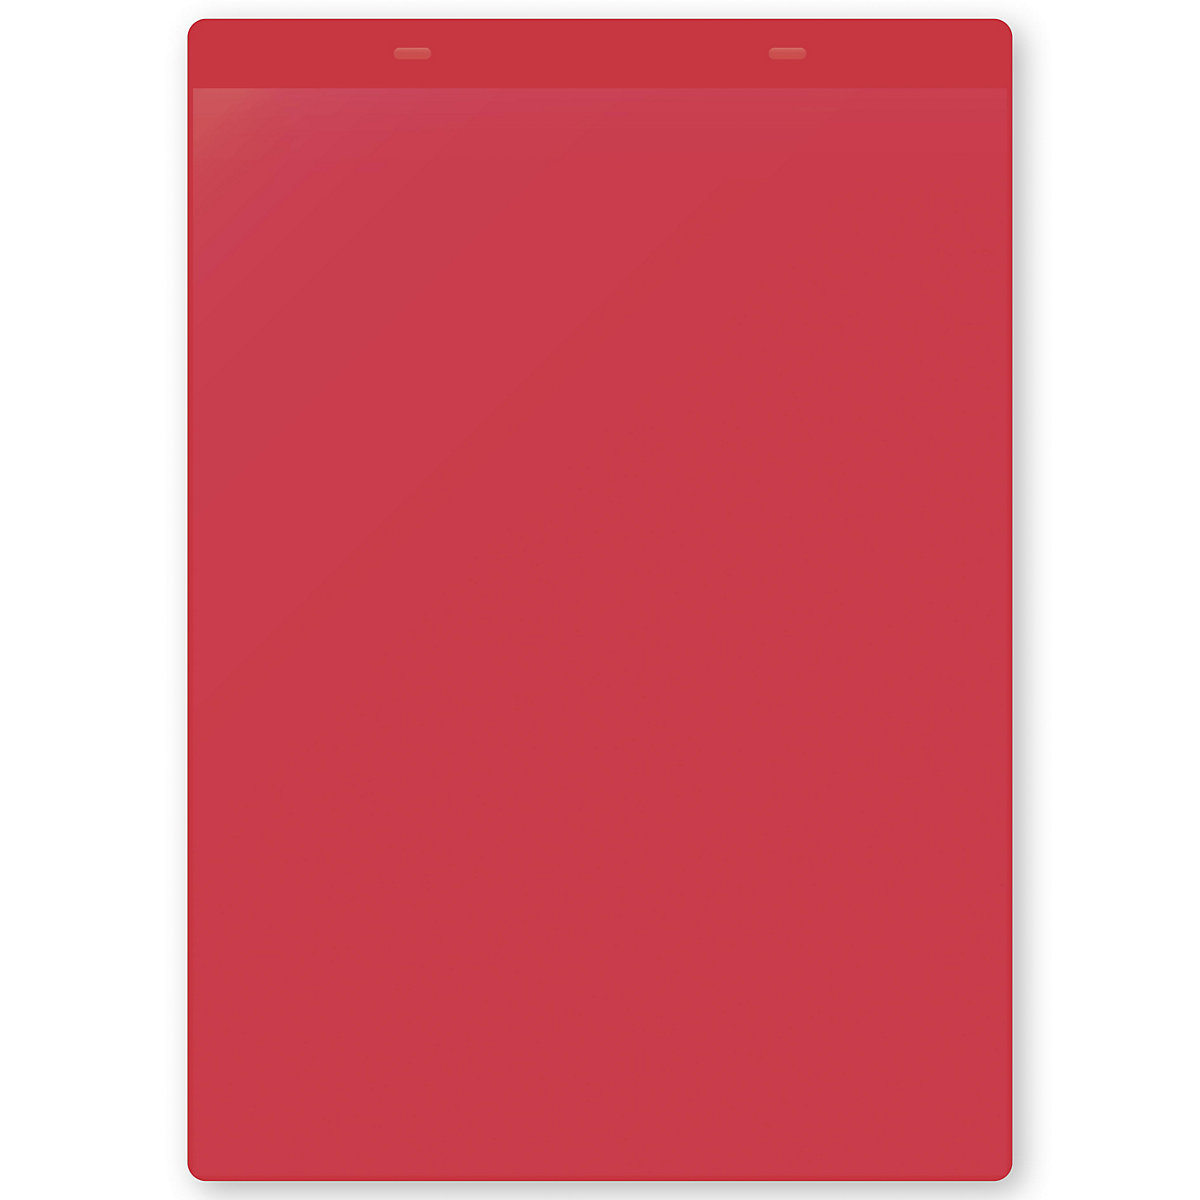 Dokumentumtartó tasakok akasztópánttal, DIN A4, álló, cs. e. 10 db, piros